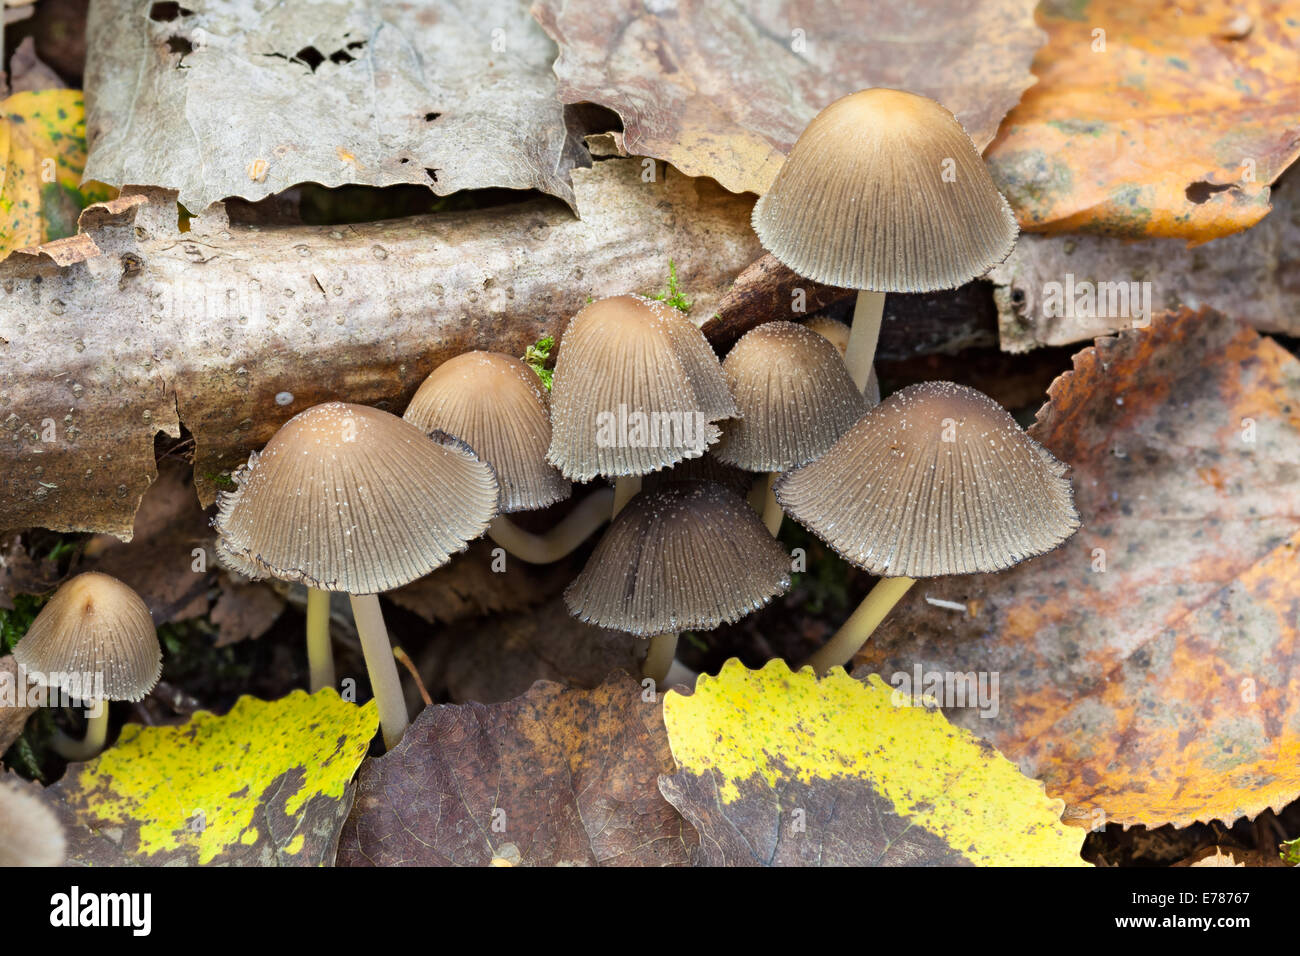 Mica cap mushrooms, Coprinellus micaceus Stock Photo